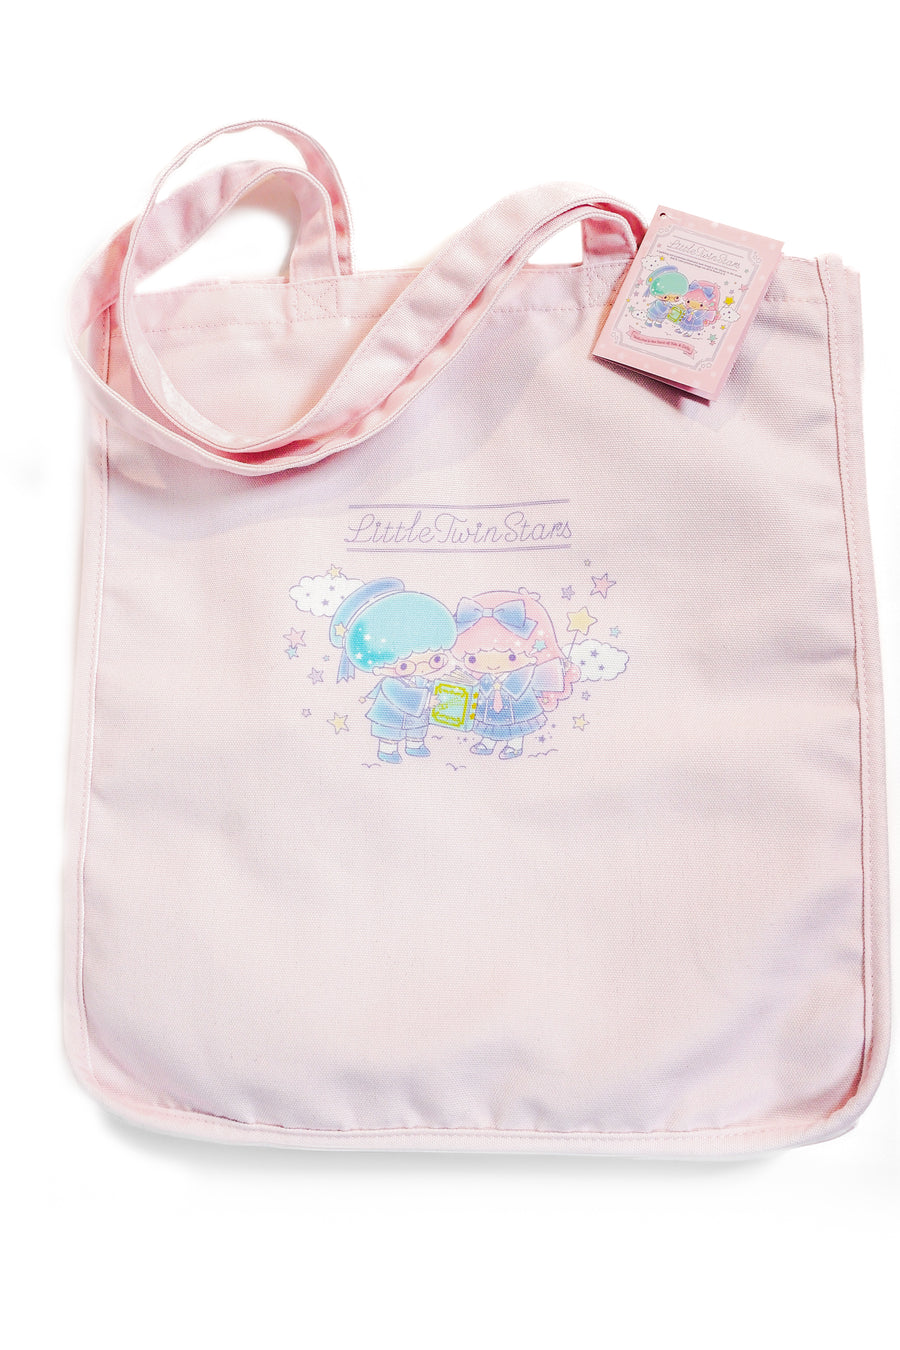 Sanrio Tote Bag Picture Book Twin Stars